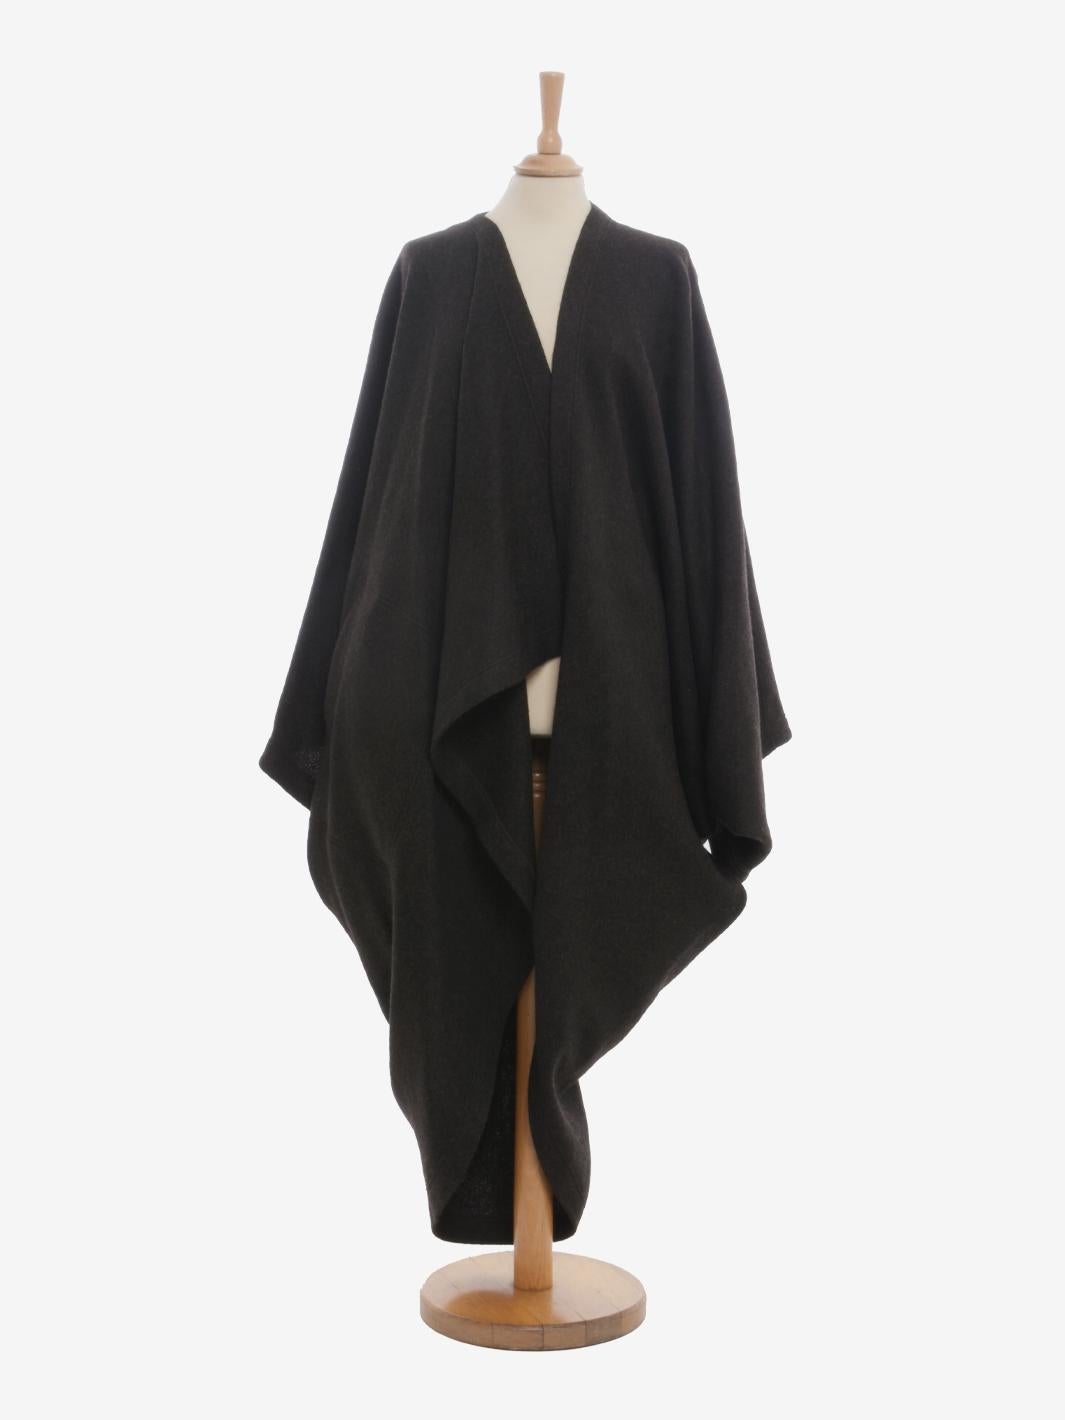 Der Issey Miyake Wool Dolman Coat ist ein Kleidungsstück aus der 1985 eingeführten Permanente-Kollektion, die für die Wiederbelebung der ursprünglichen Formen und Stoffe aus früheren Issey Miyake-Kollektionen bekannt ist. Die Oberbekleidung zeichnet